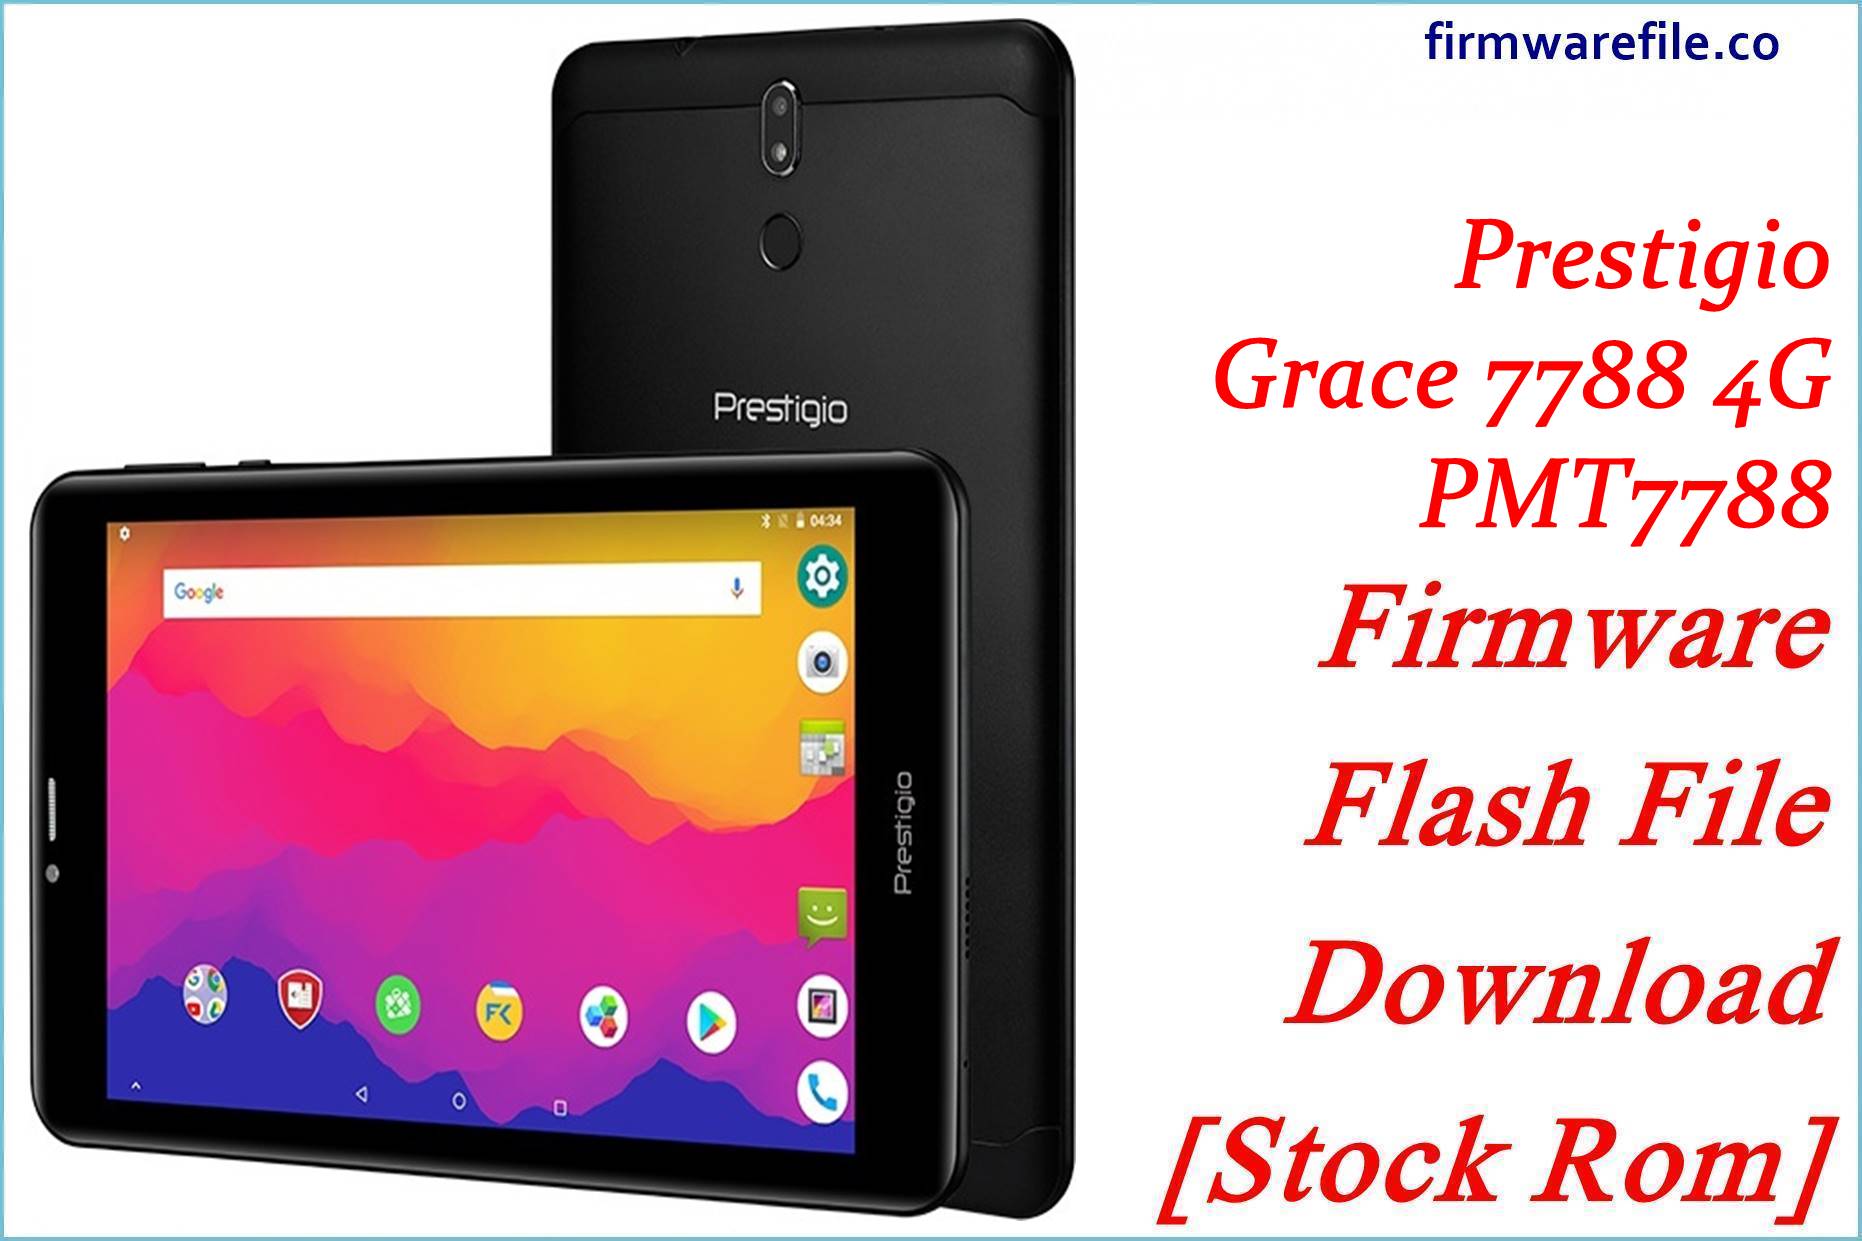 Prestigio Grace 7788 4G PMT7788 Firmware Flash File Download [Stock Rom]